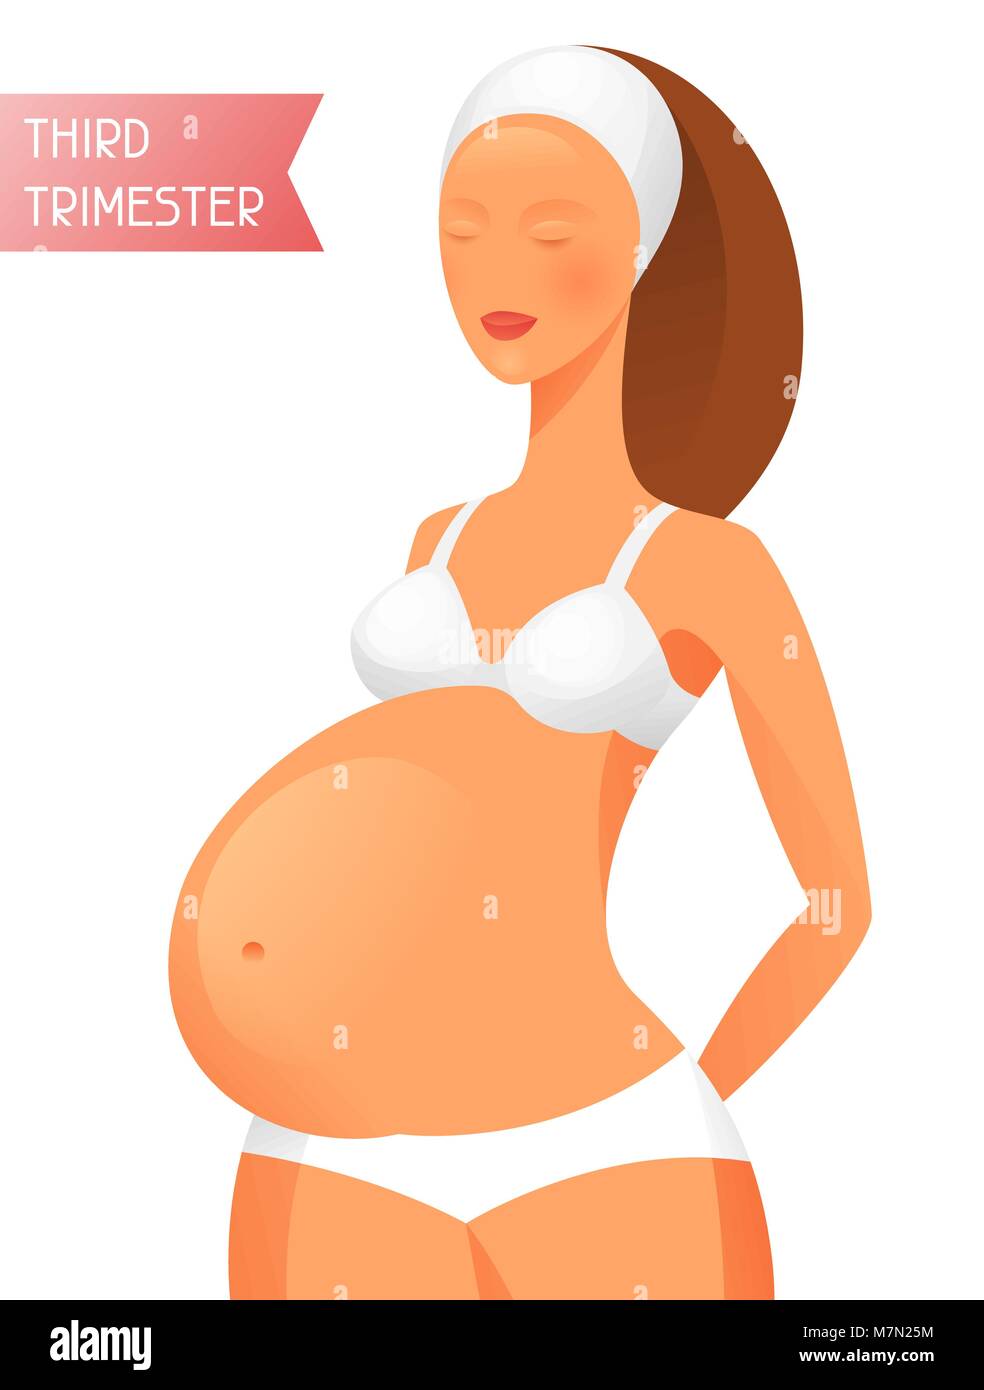 Les femmes enceintes au troisième trimestre de la grossesse. L'illustration de sites Web, magazines et brochures Illustration de Vecteur